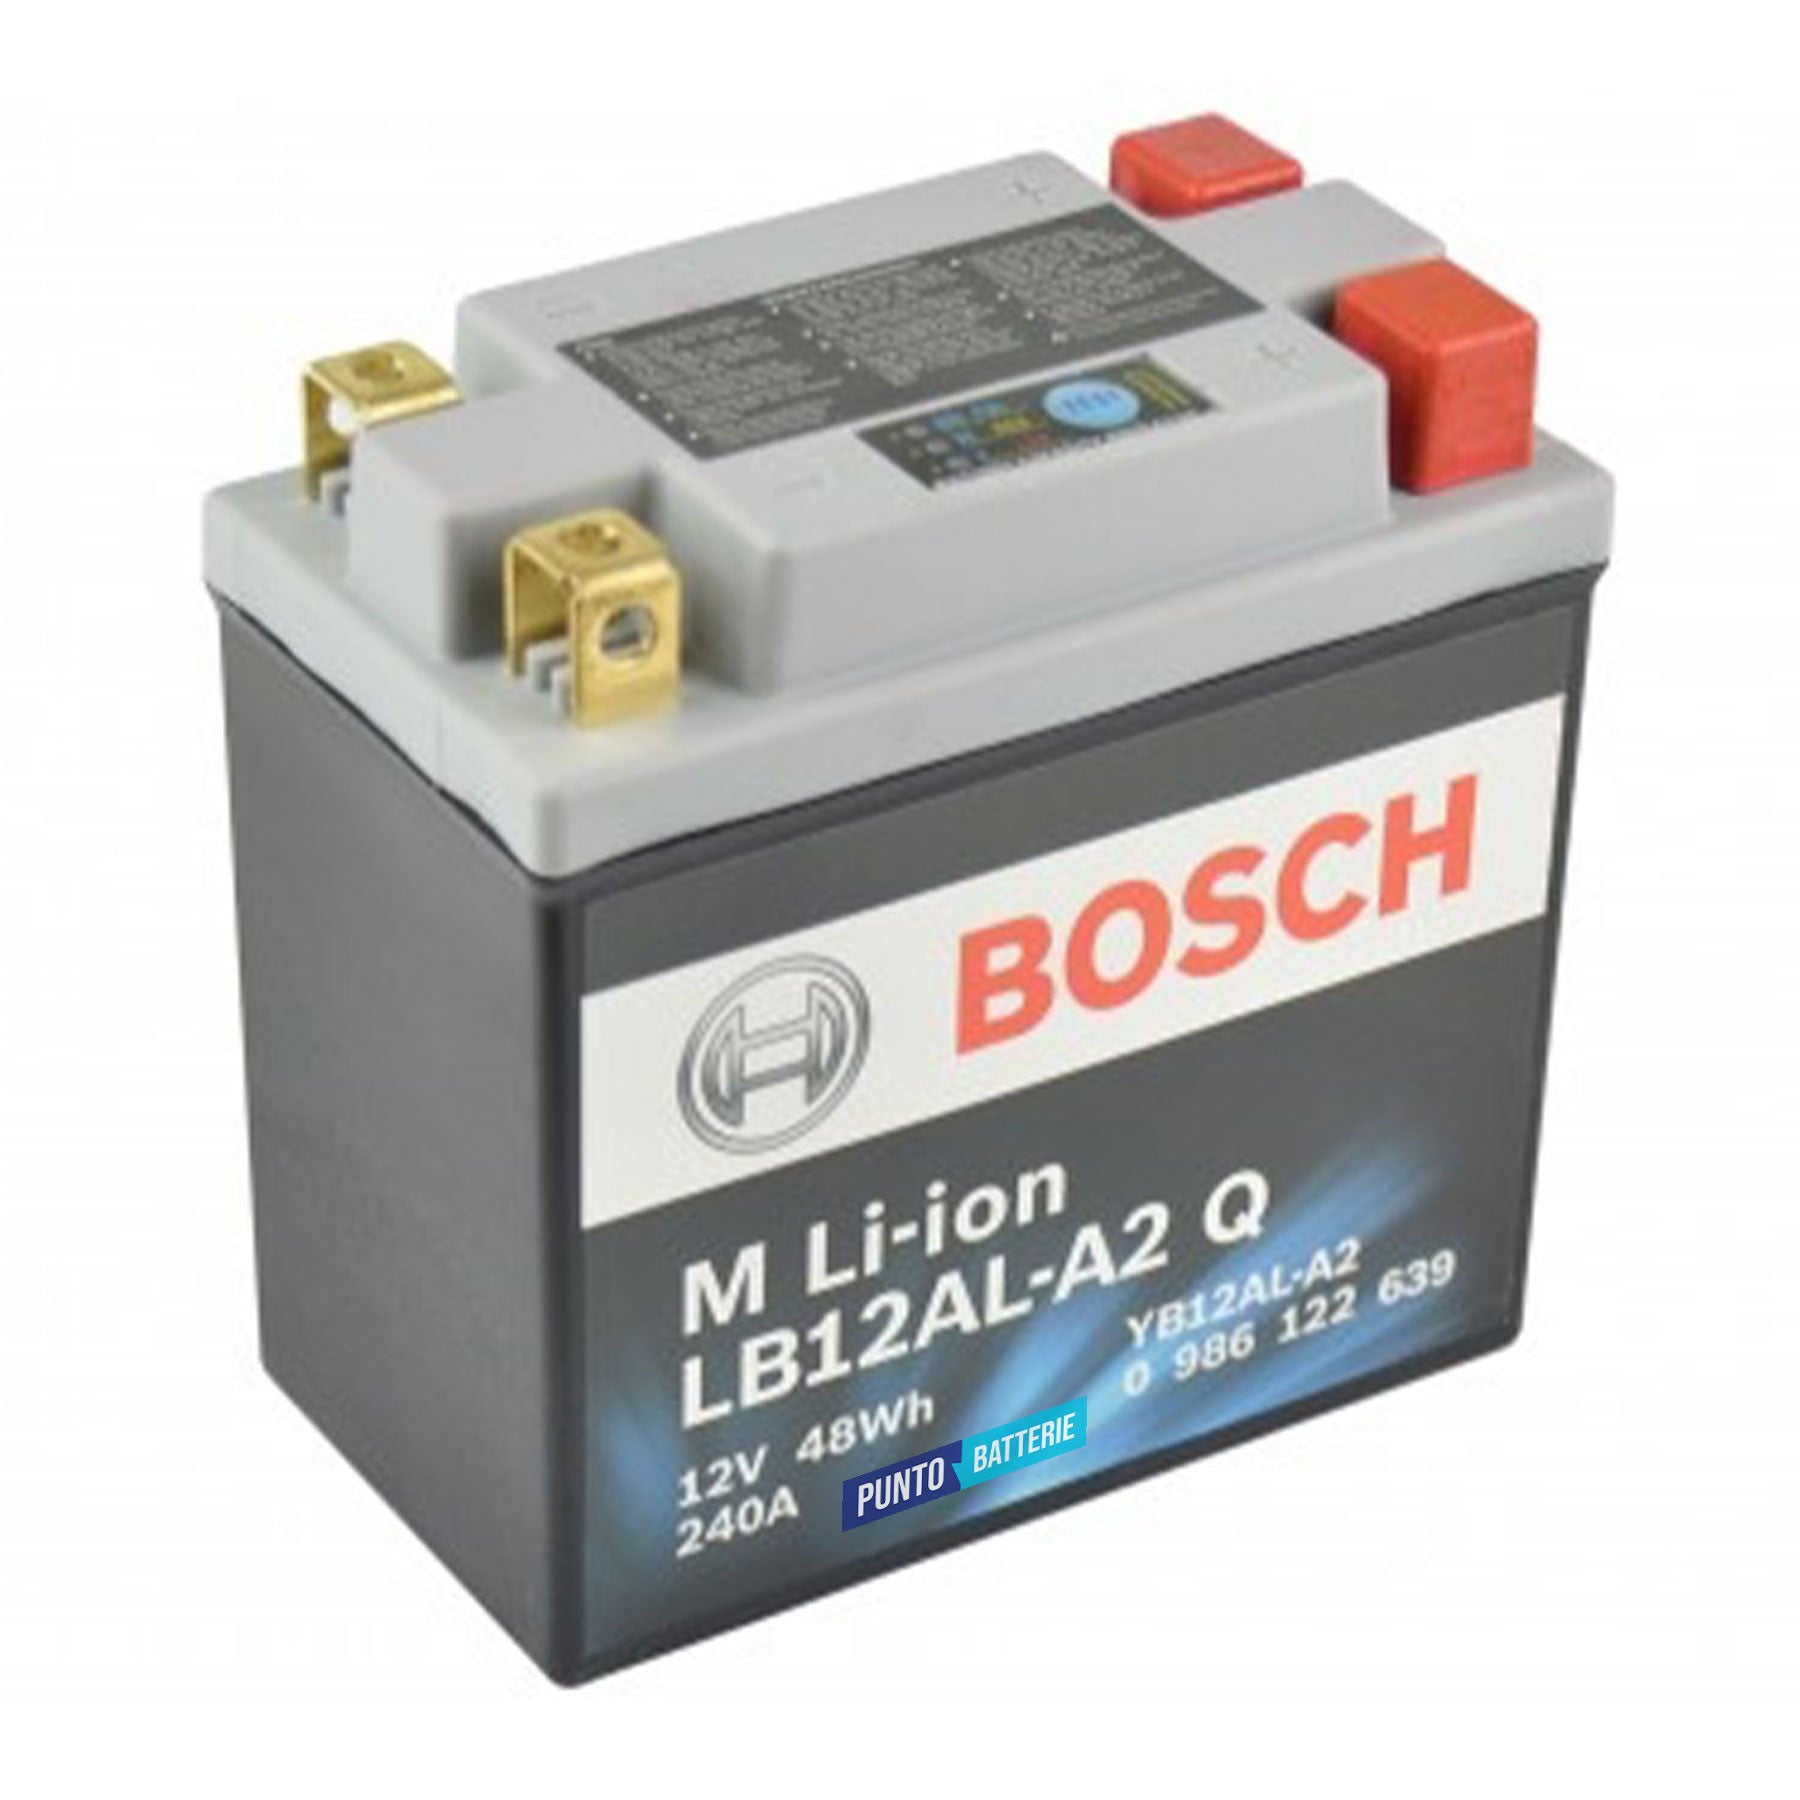 Batteria originale Bosch M Li-ion LB12AL-A2, dimensioni 134 x 75 x 161, polo positivo a destra e sinistra, 12 volt, 4 amperora, 240 ampere. Batteria per moto, scooter e powersport.